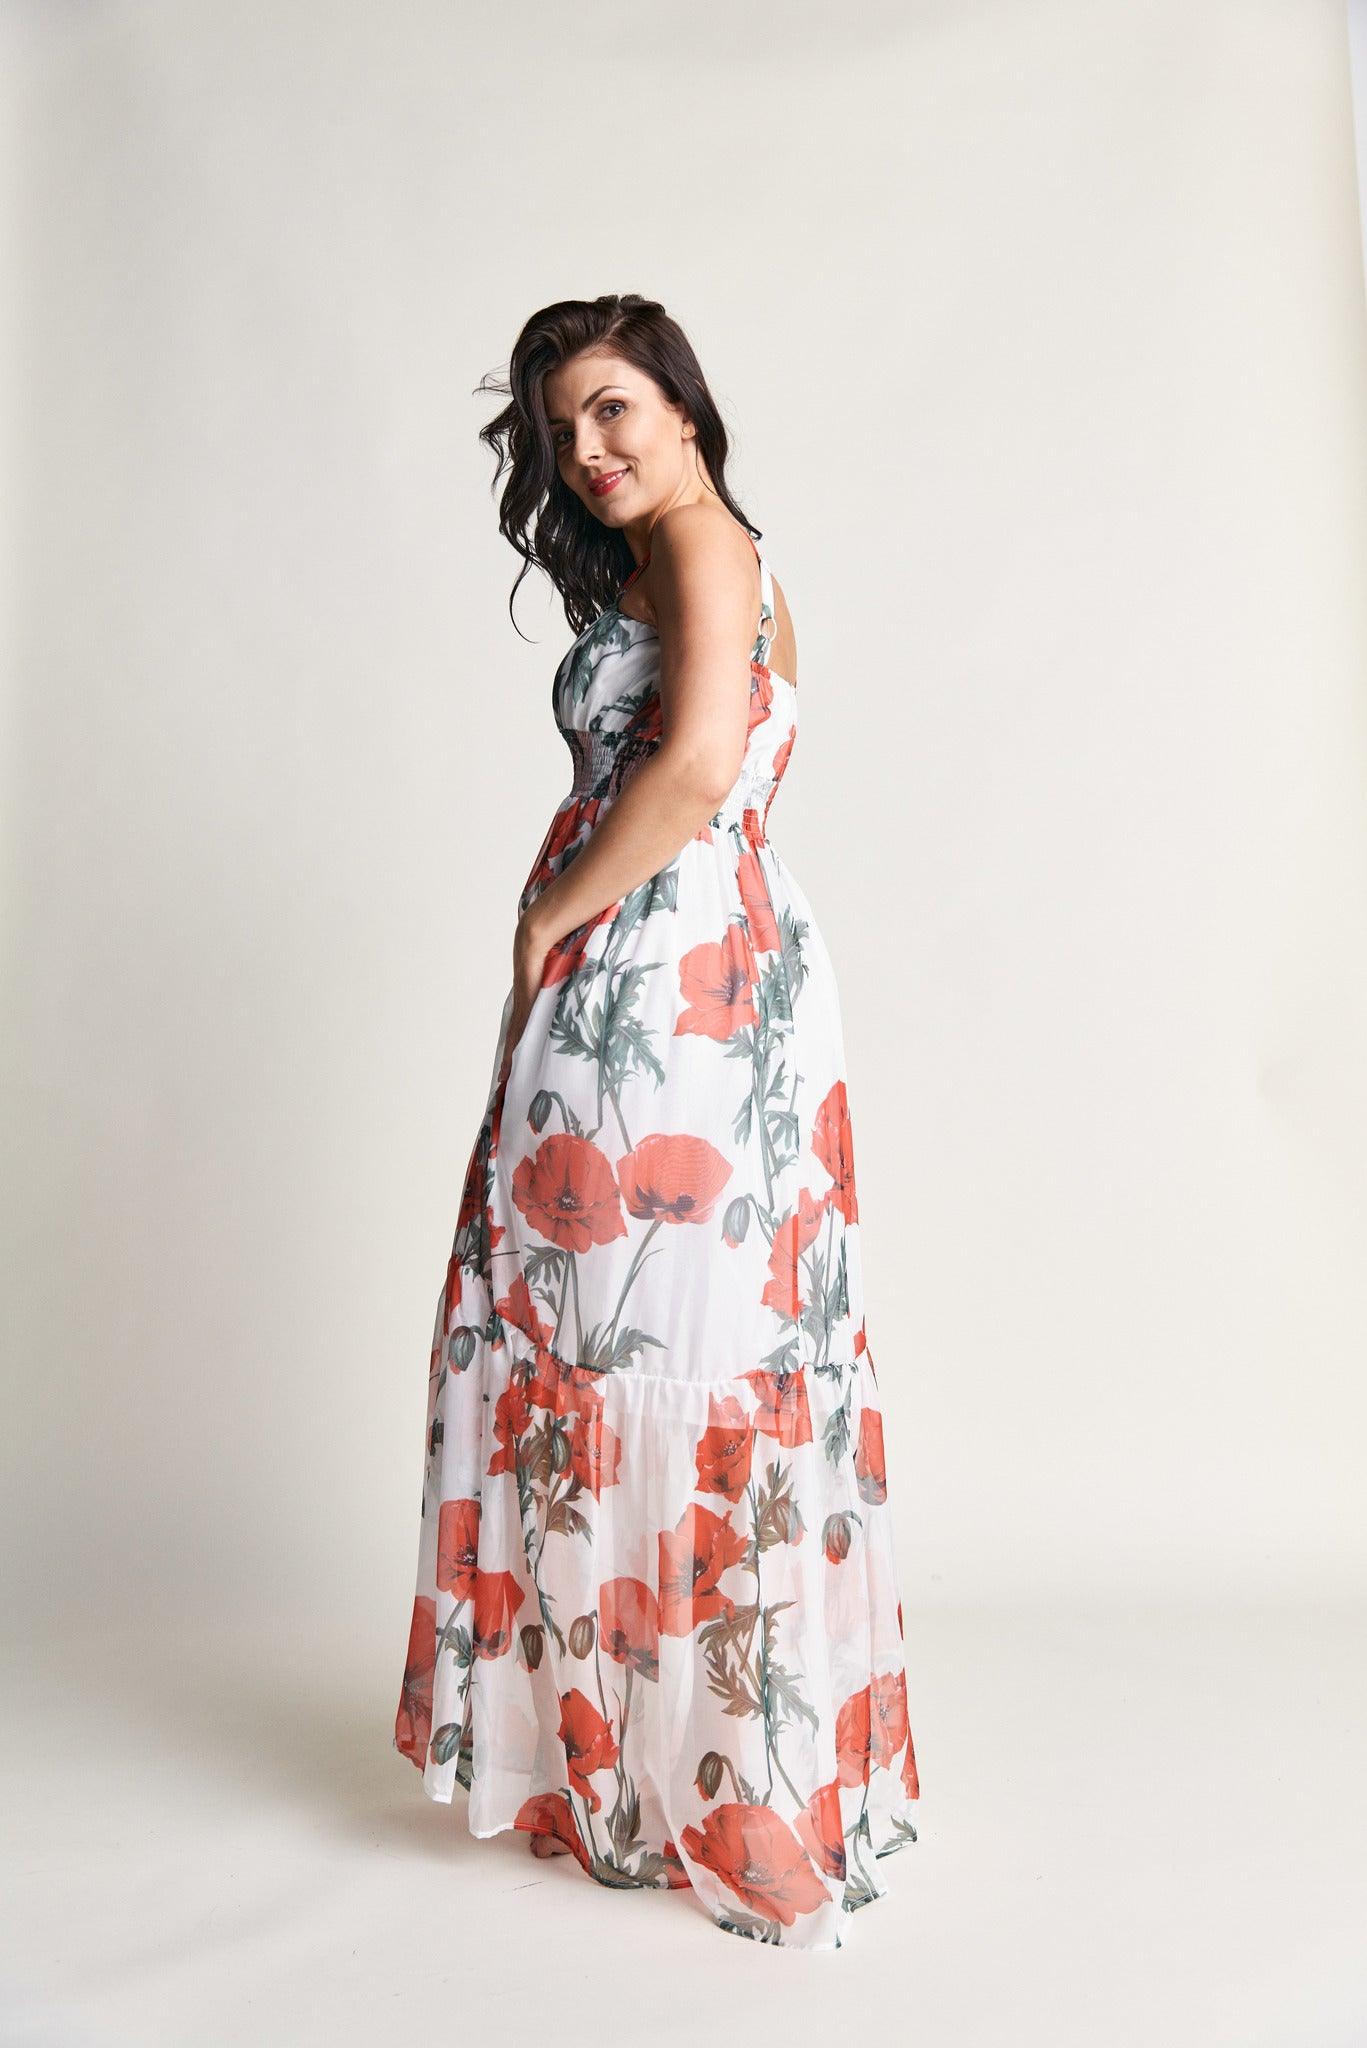 Langes Kleid mit floralem Muster - Lidamoh Fashion